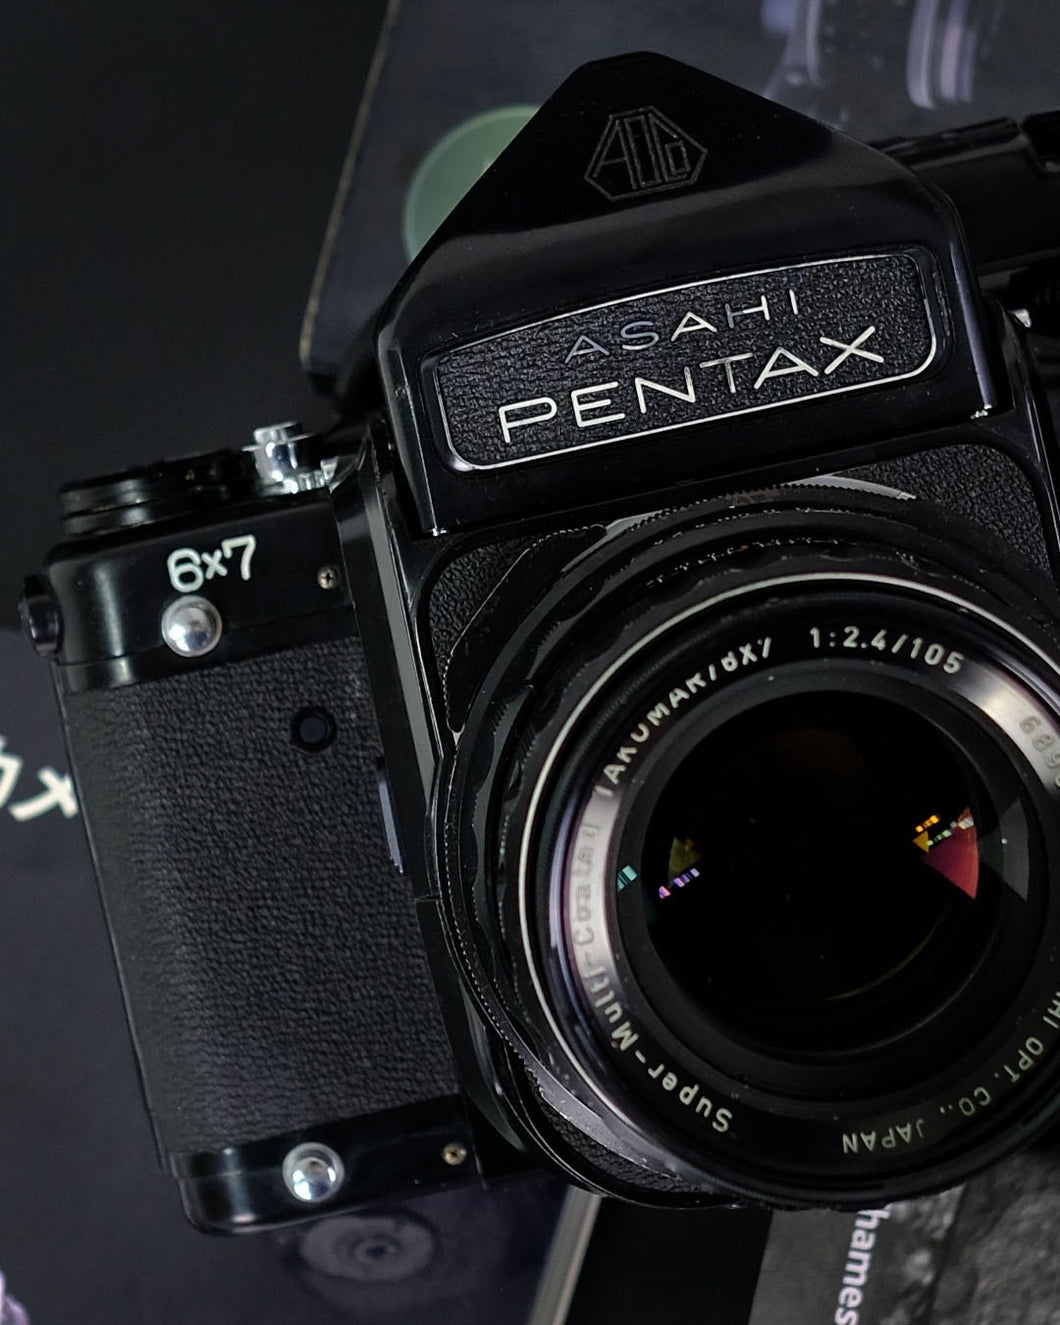 Asahi Pentax 6x7 with Lens